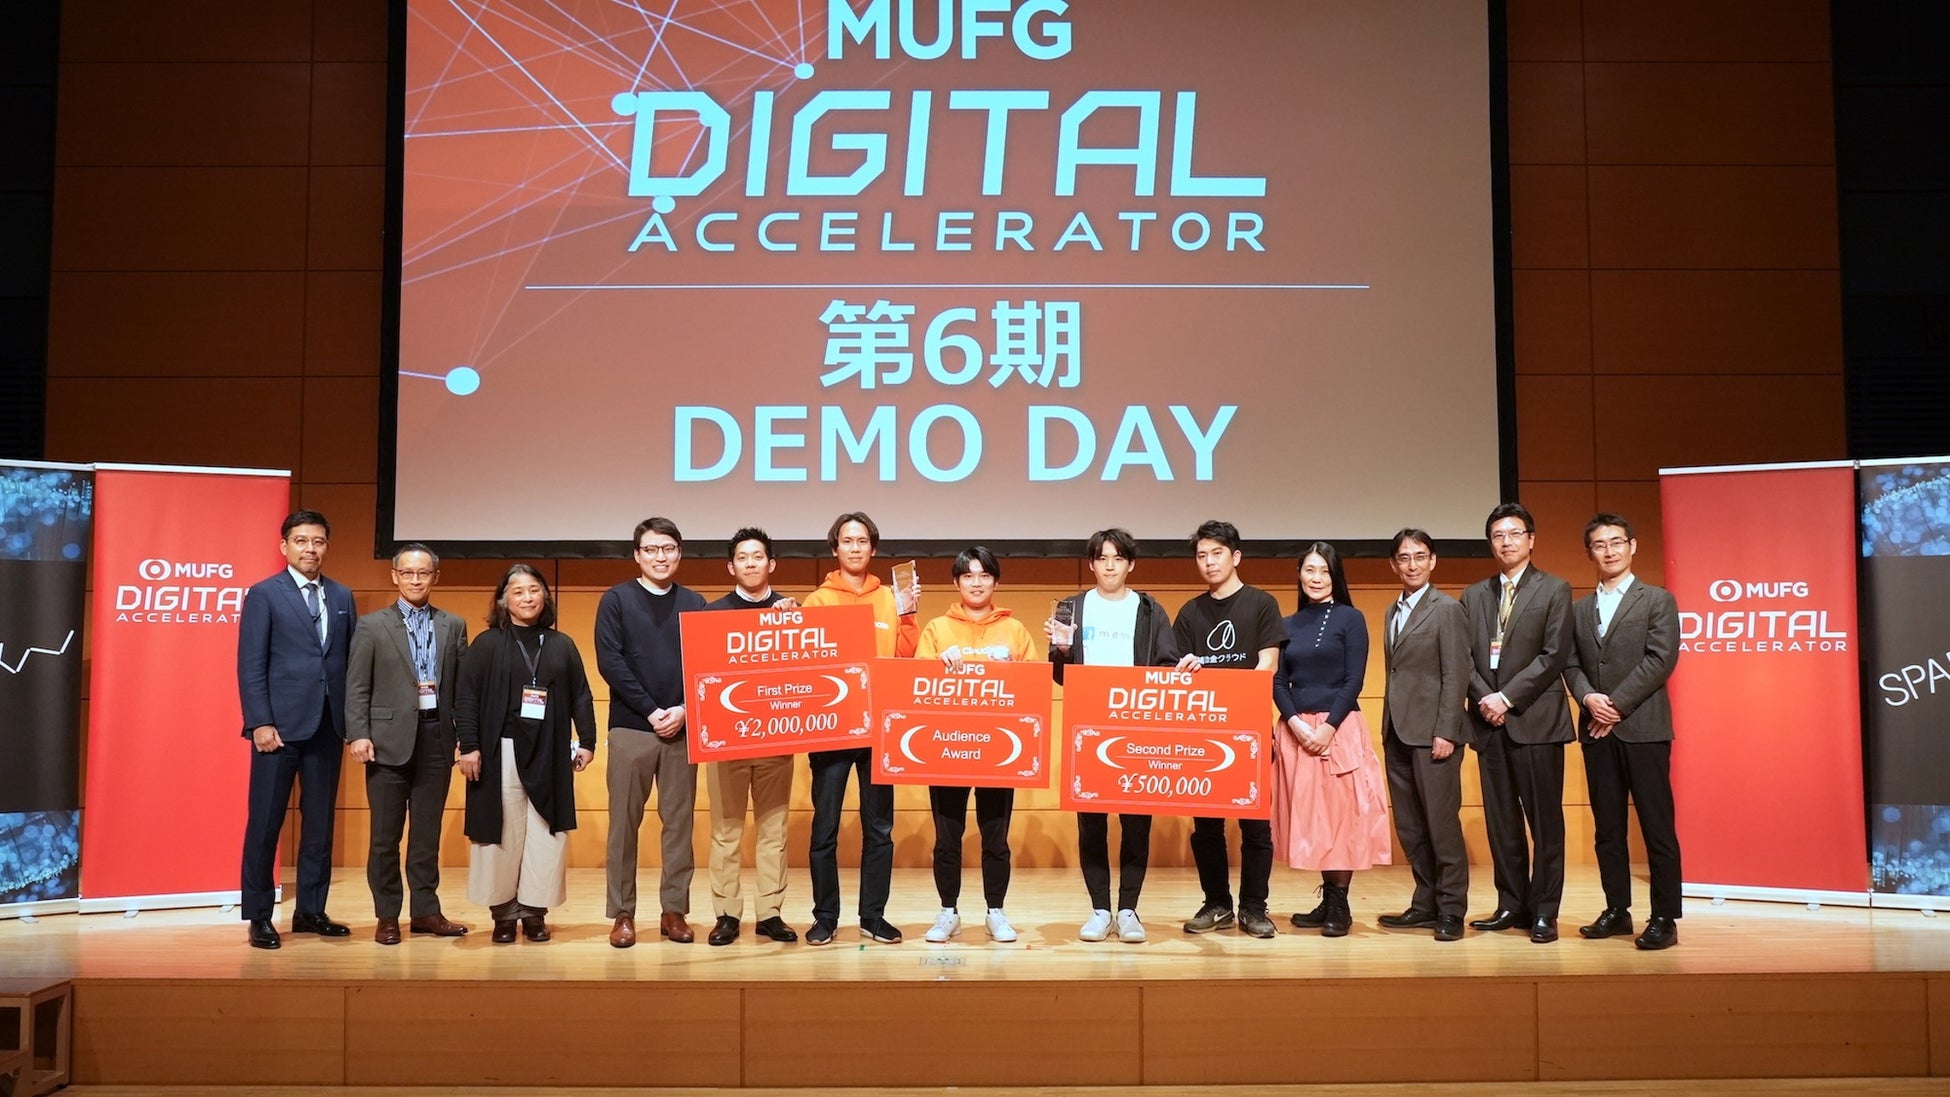 邦銀初のアクセラレータプログラム「MUFG Digitalアクセラレータ」、第6期DEMODAYを開催